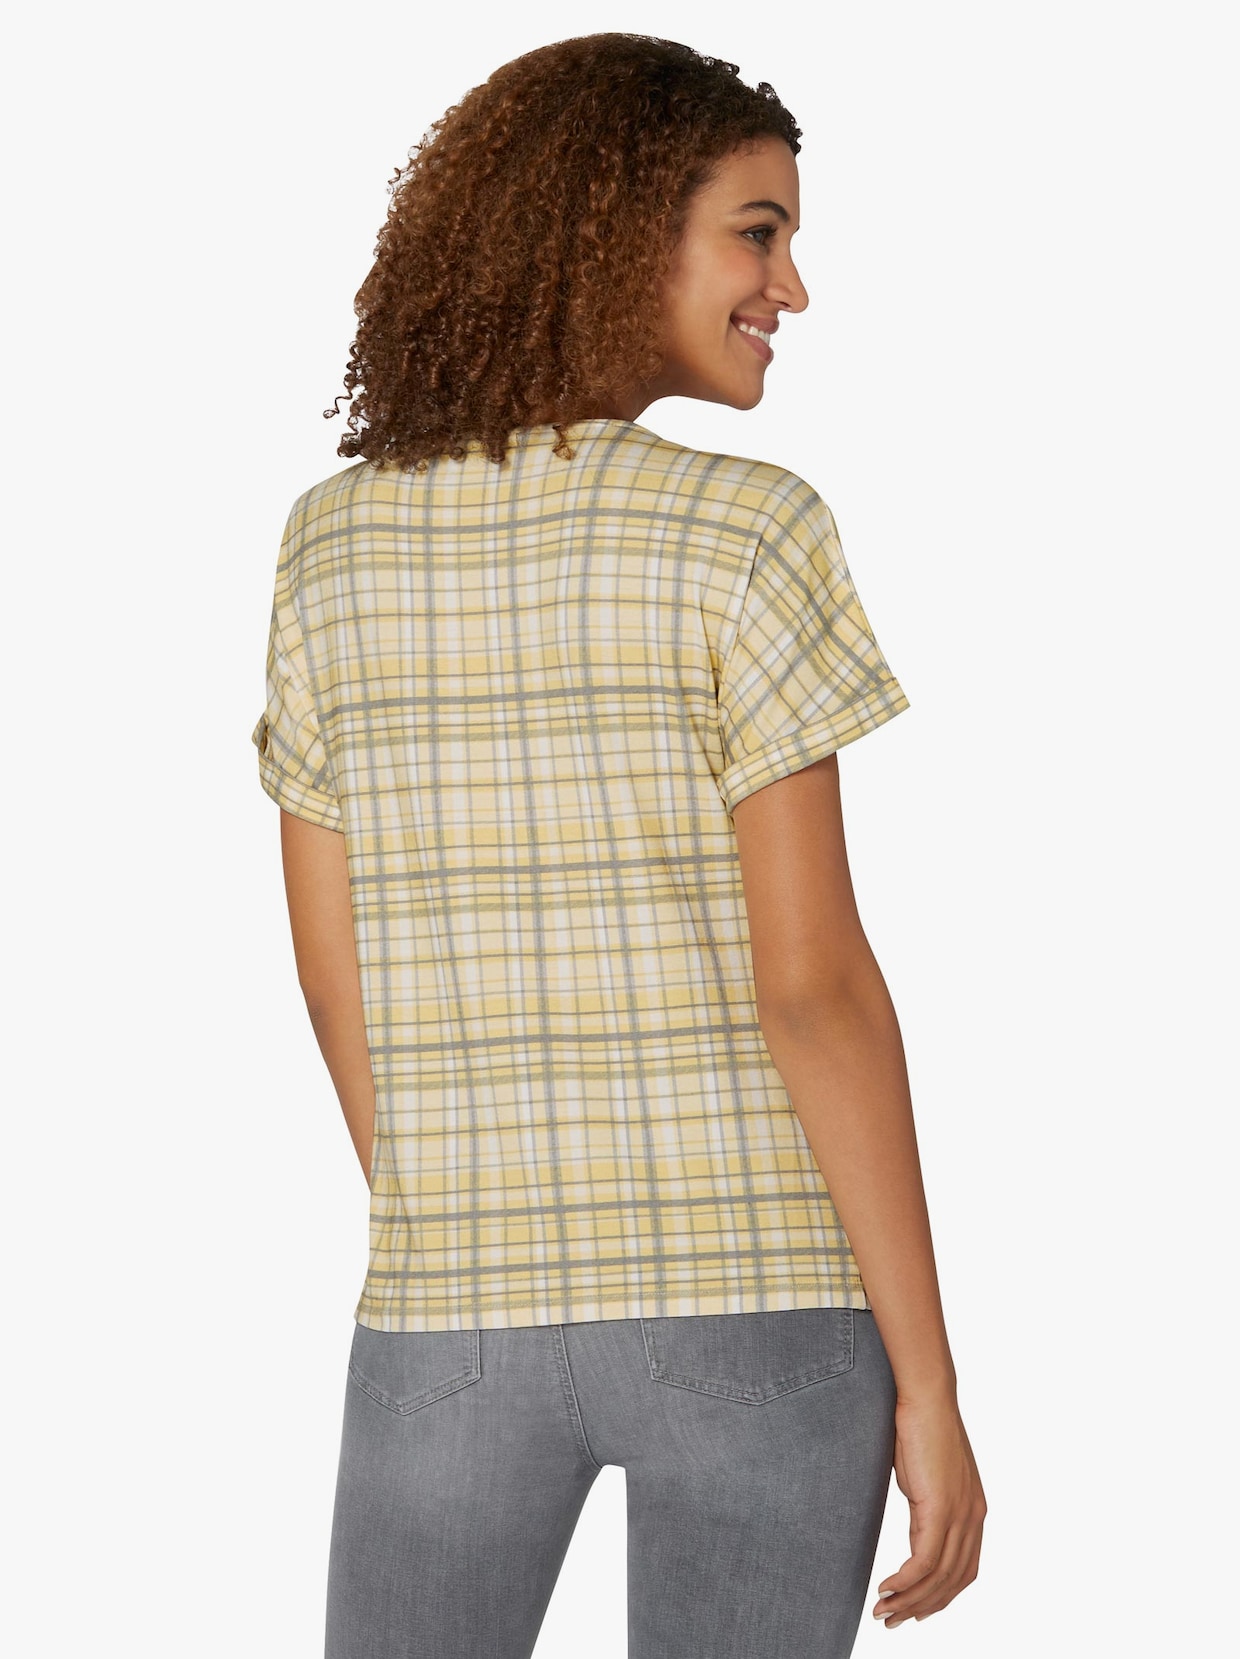 Tričko s krátkým rukávem - citronová-kostka